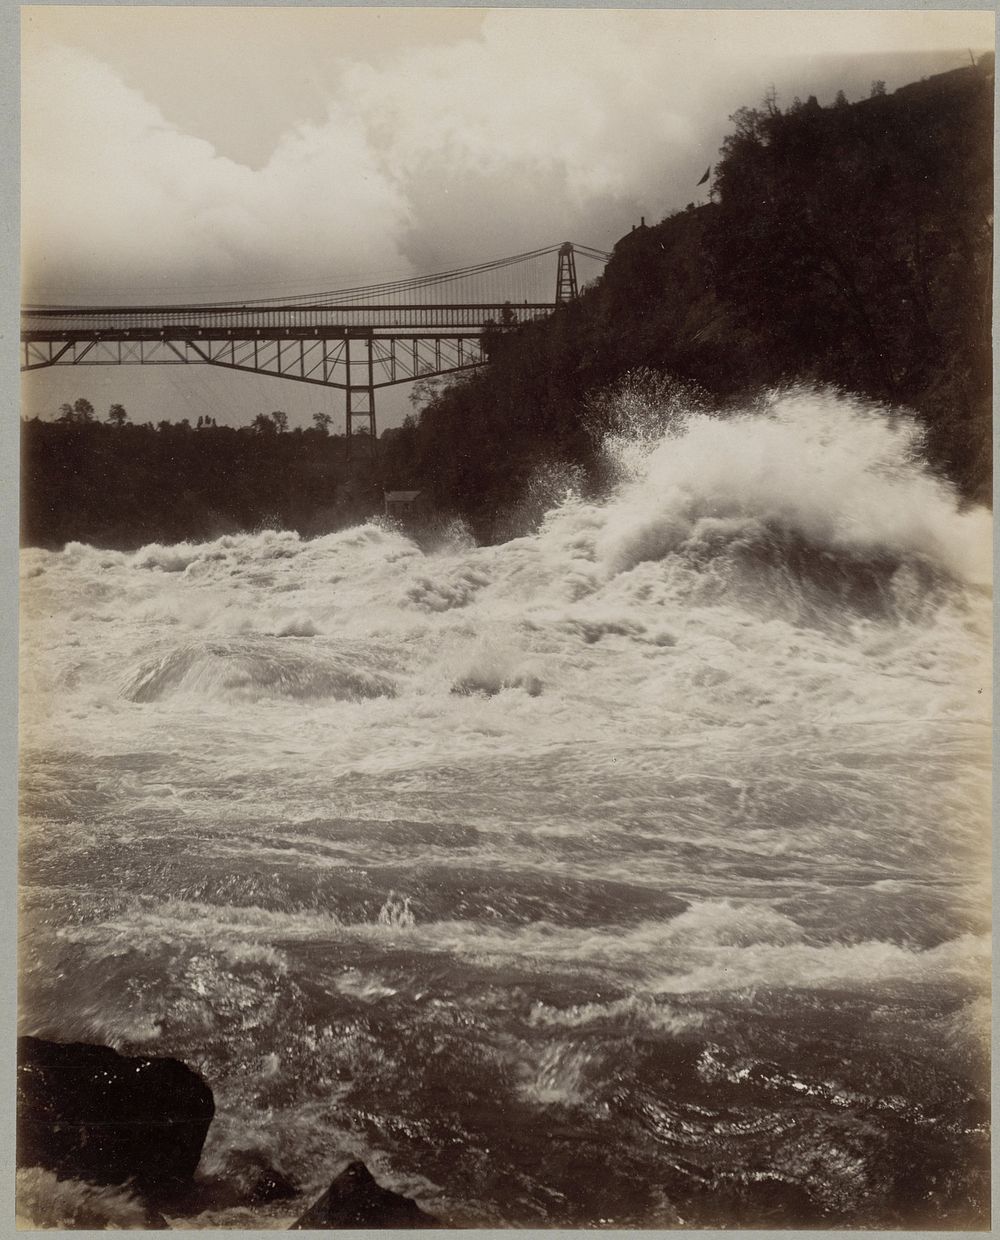 Gezicht op de Niagarawatervallen met op de achtergrond een brug (c. 1880 - c. 1900) by anonymous